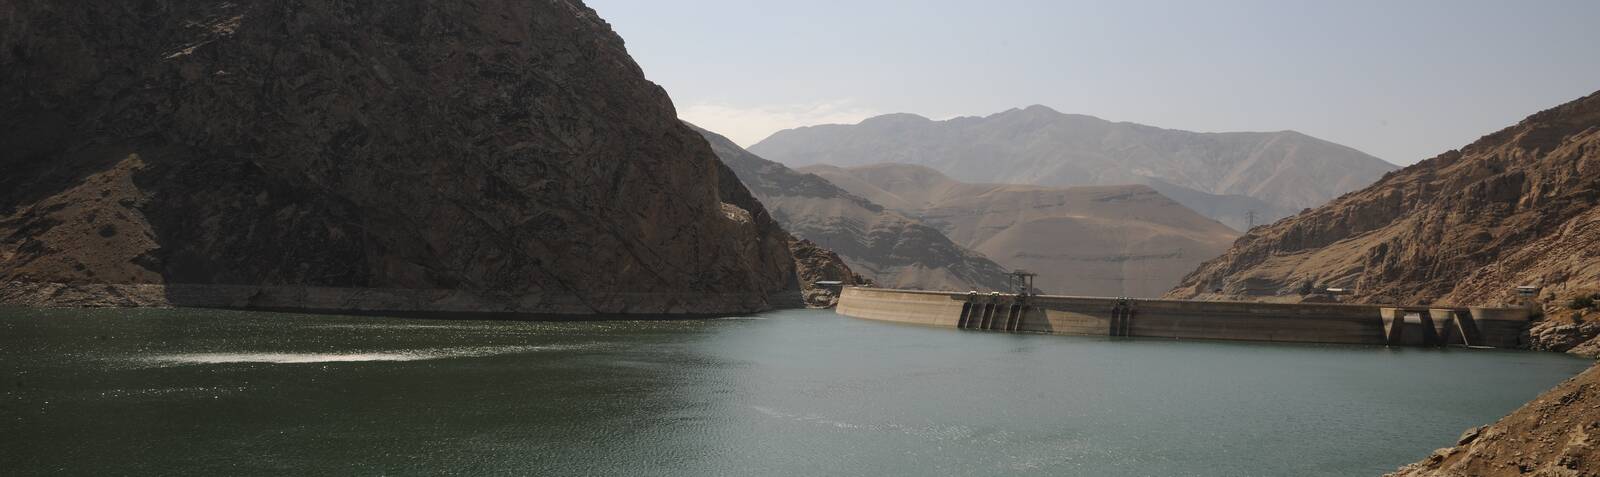 Amir Kabir Dam